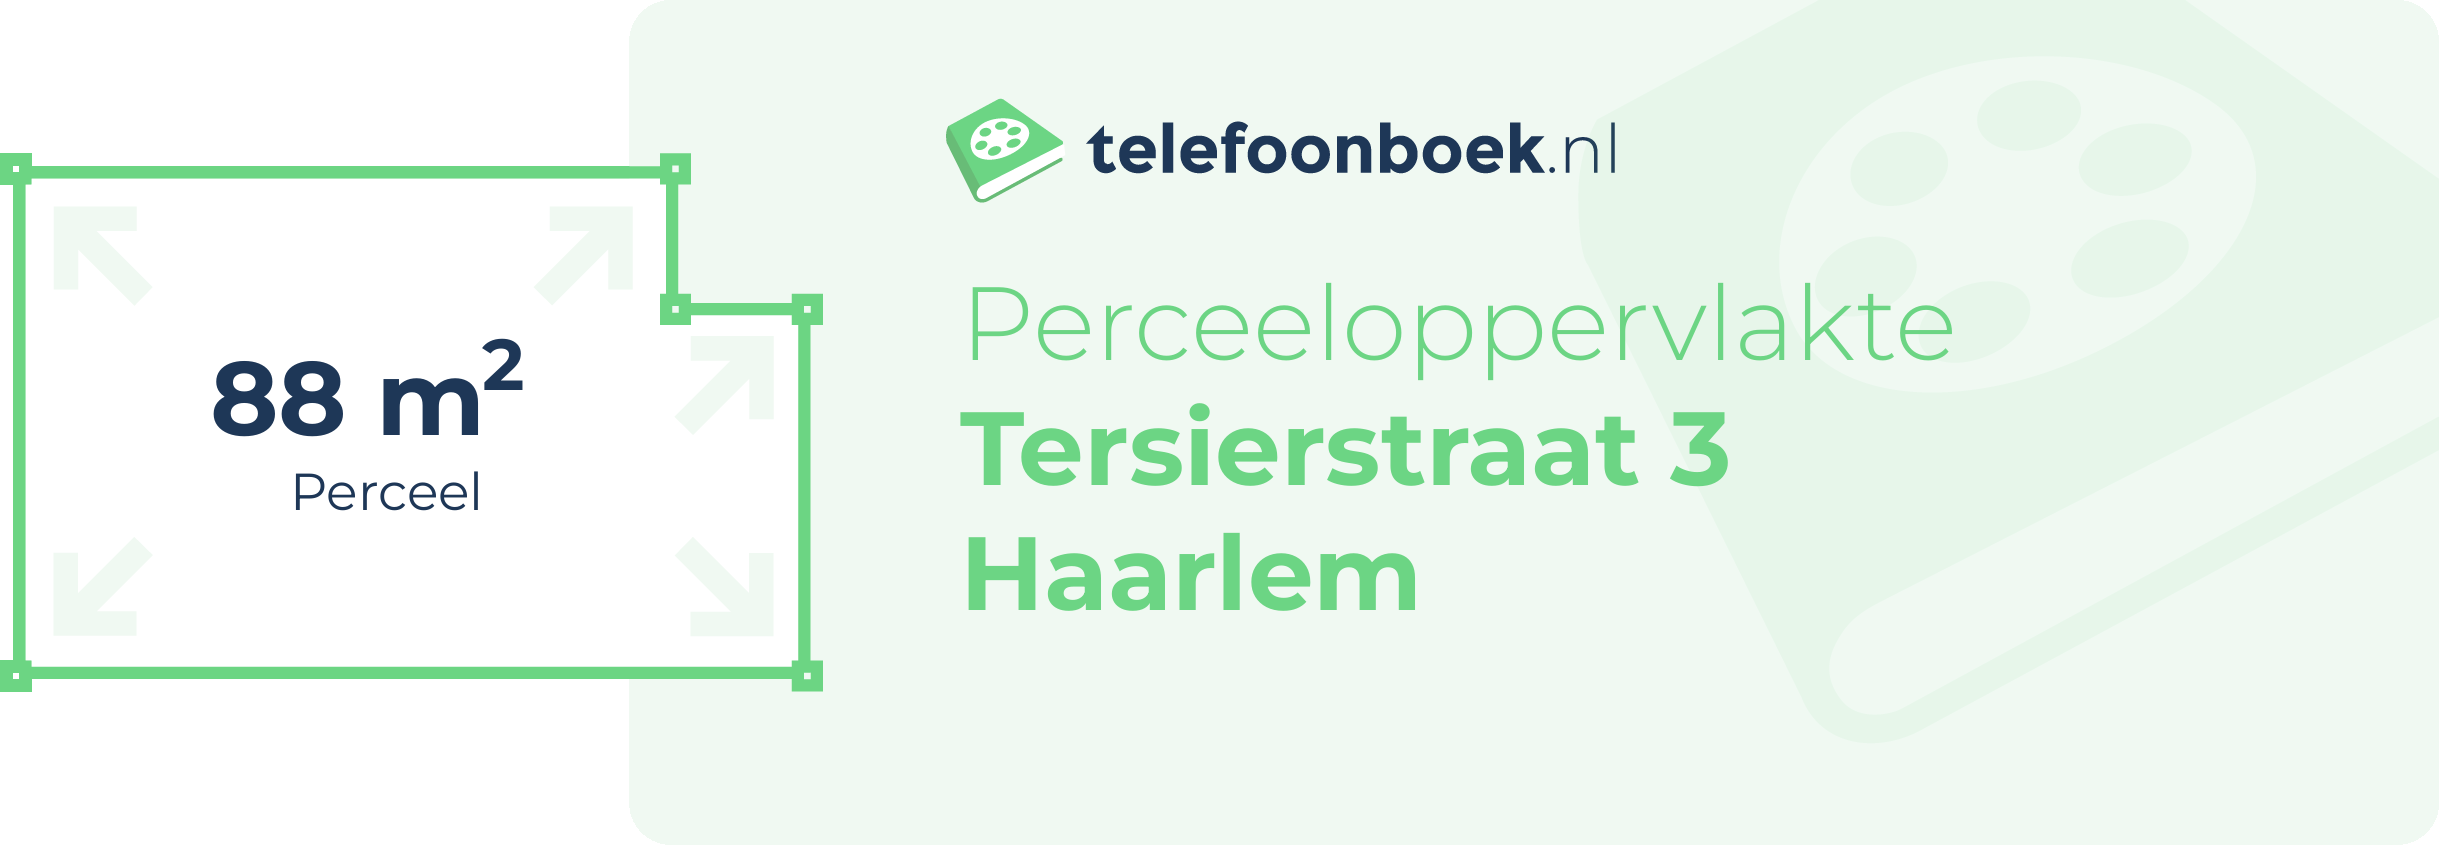 Perceeloppervlakte Tersierstraat 3 Haarlem